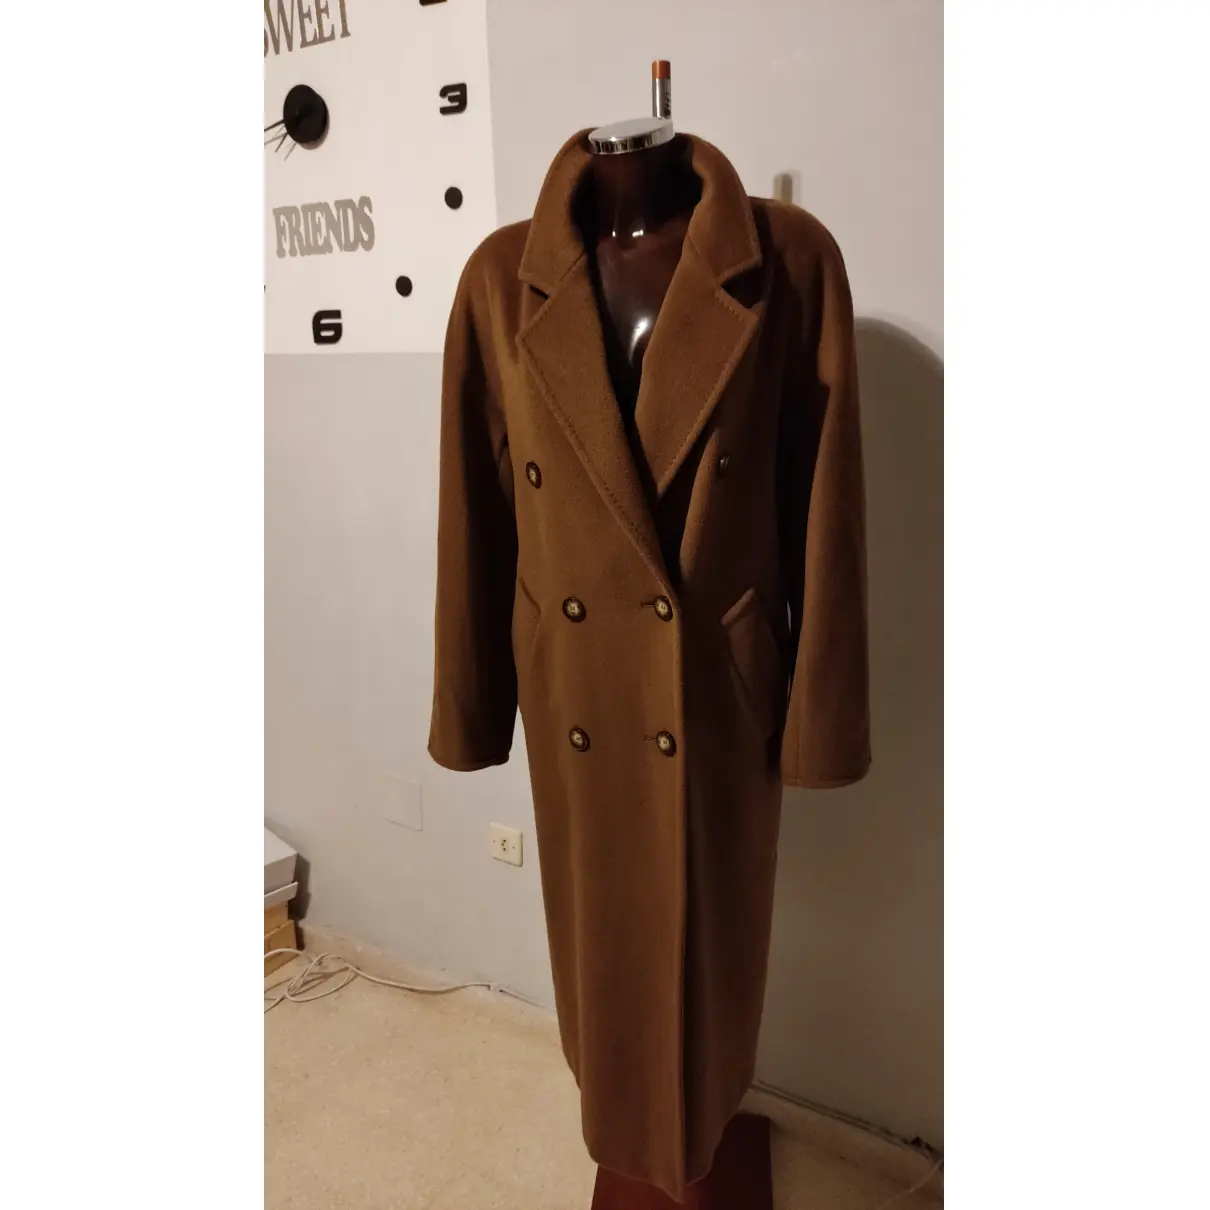 Teddy Bear Icon wool coat Max Mara